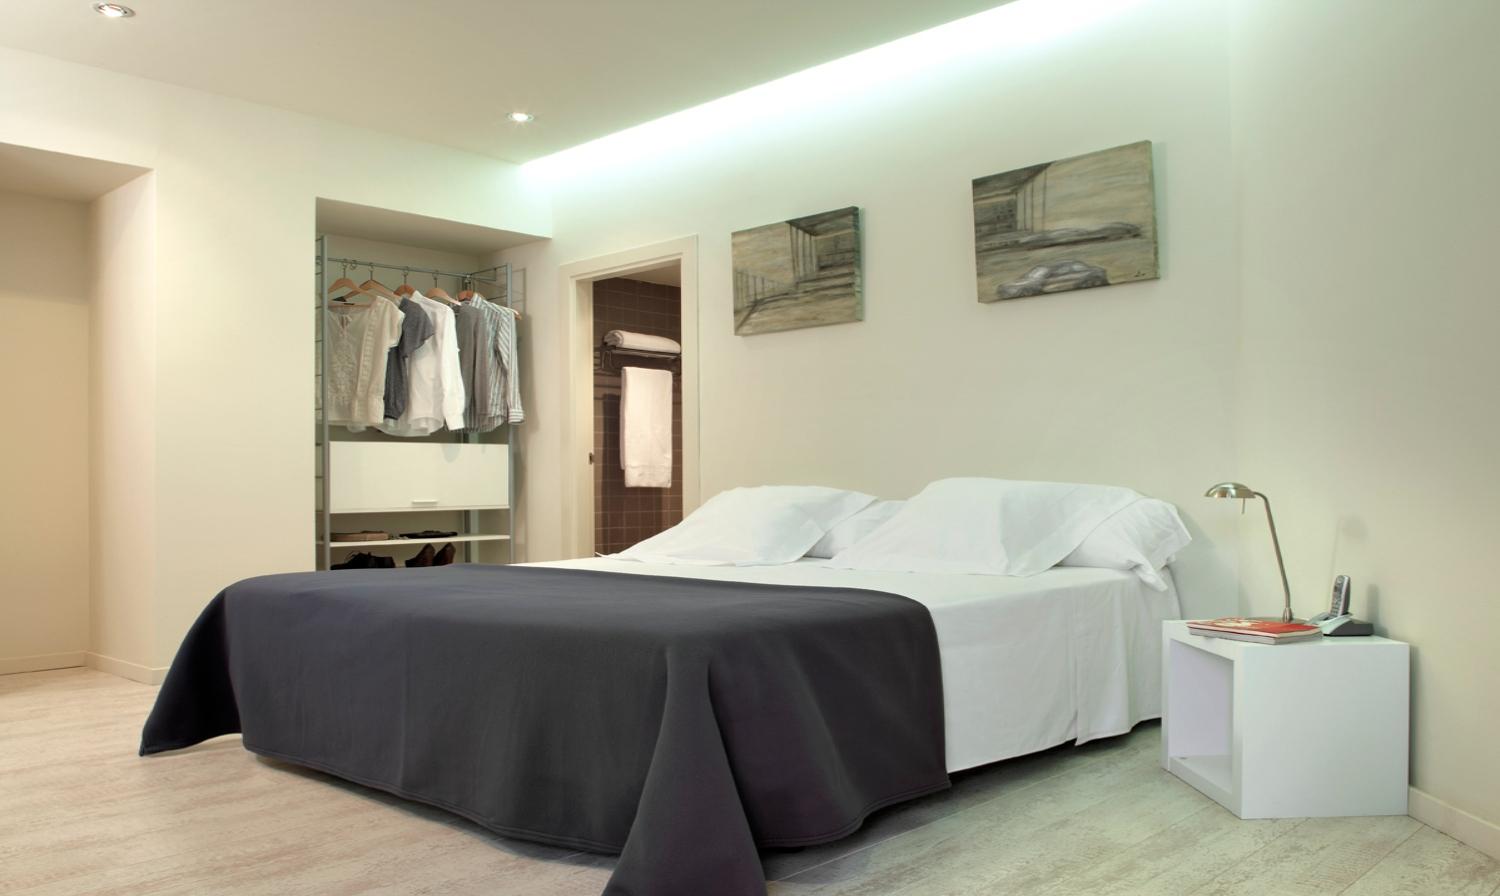 Triado - 2 bedroom apartment in Barcelona